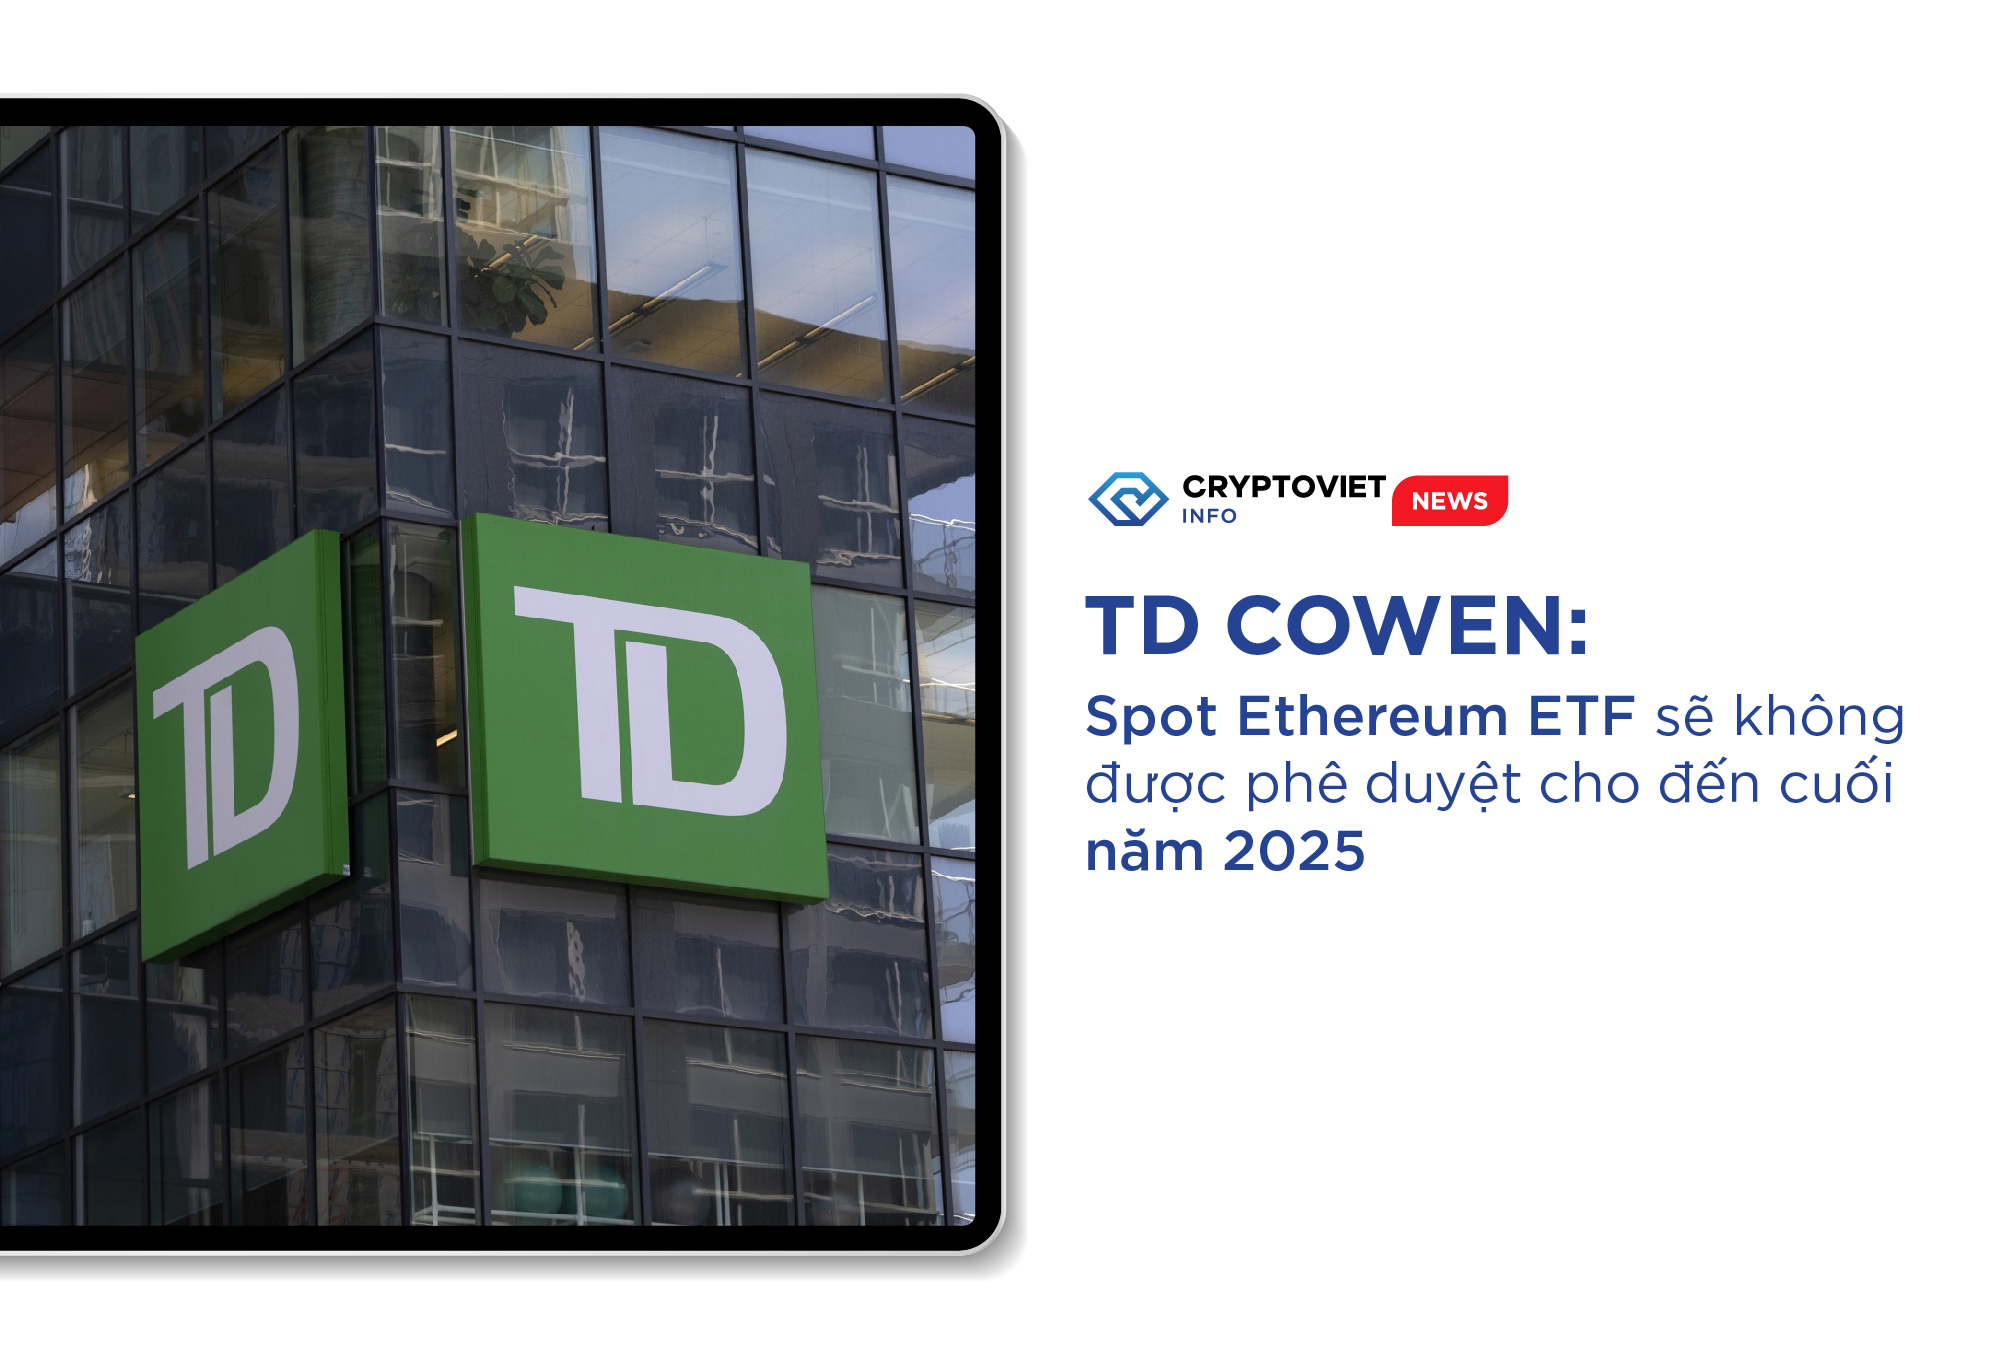 TD Cowen: Spot Ethereum ETF sẽ không được phê duyệt cho đến cuối năm 2025